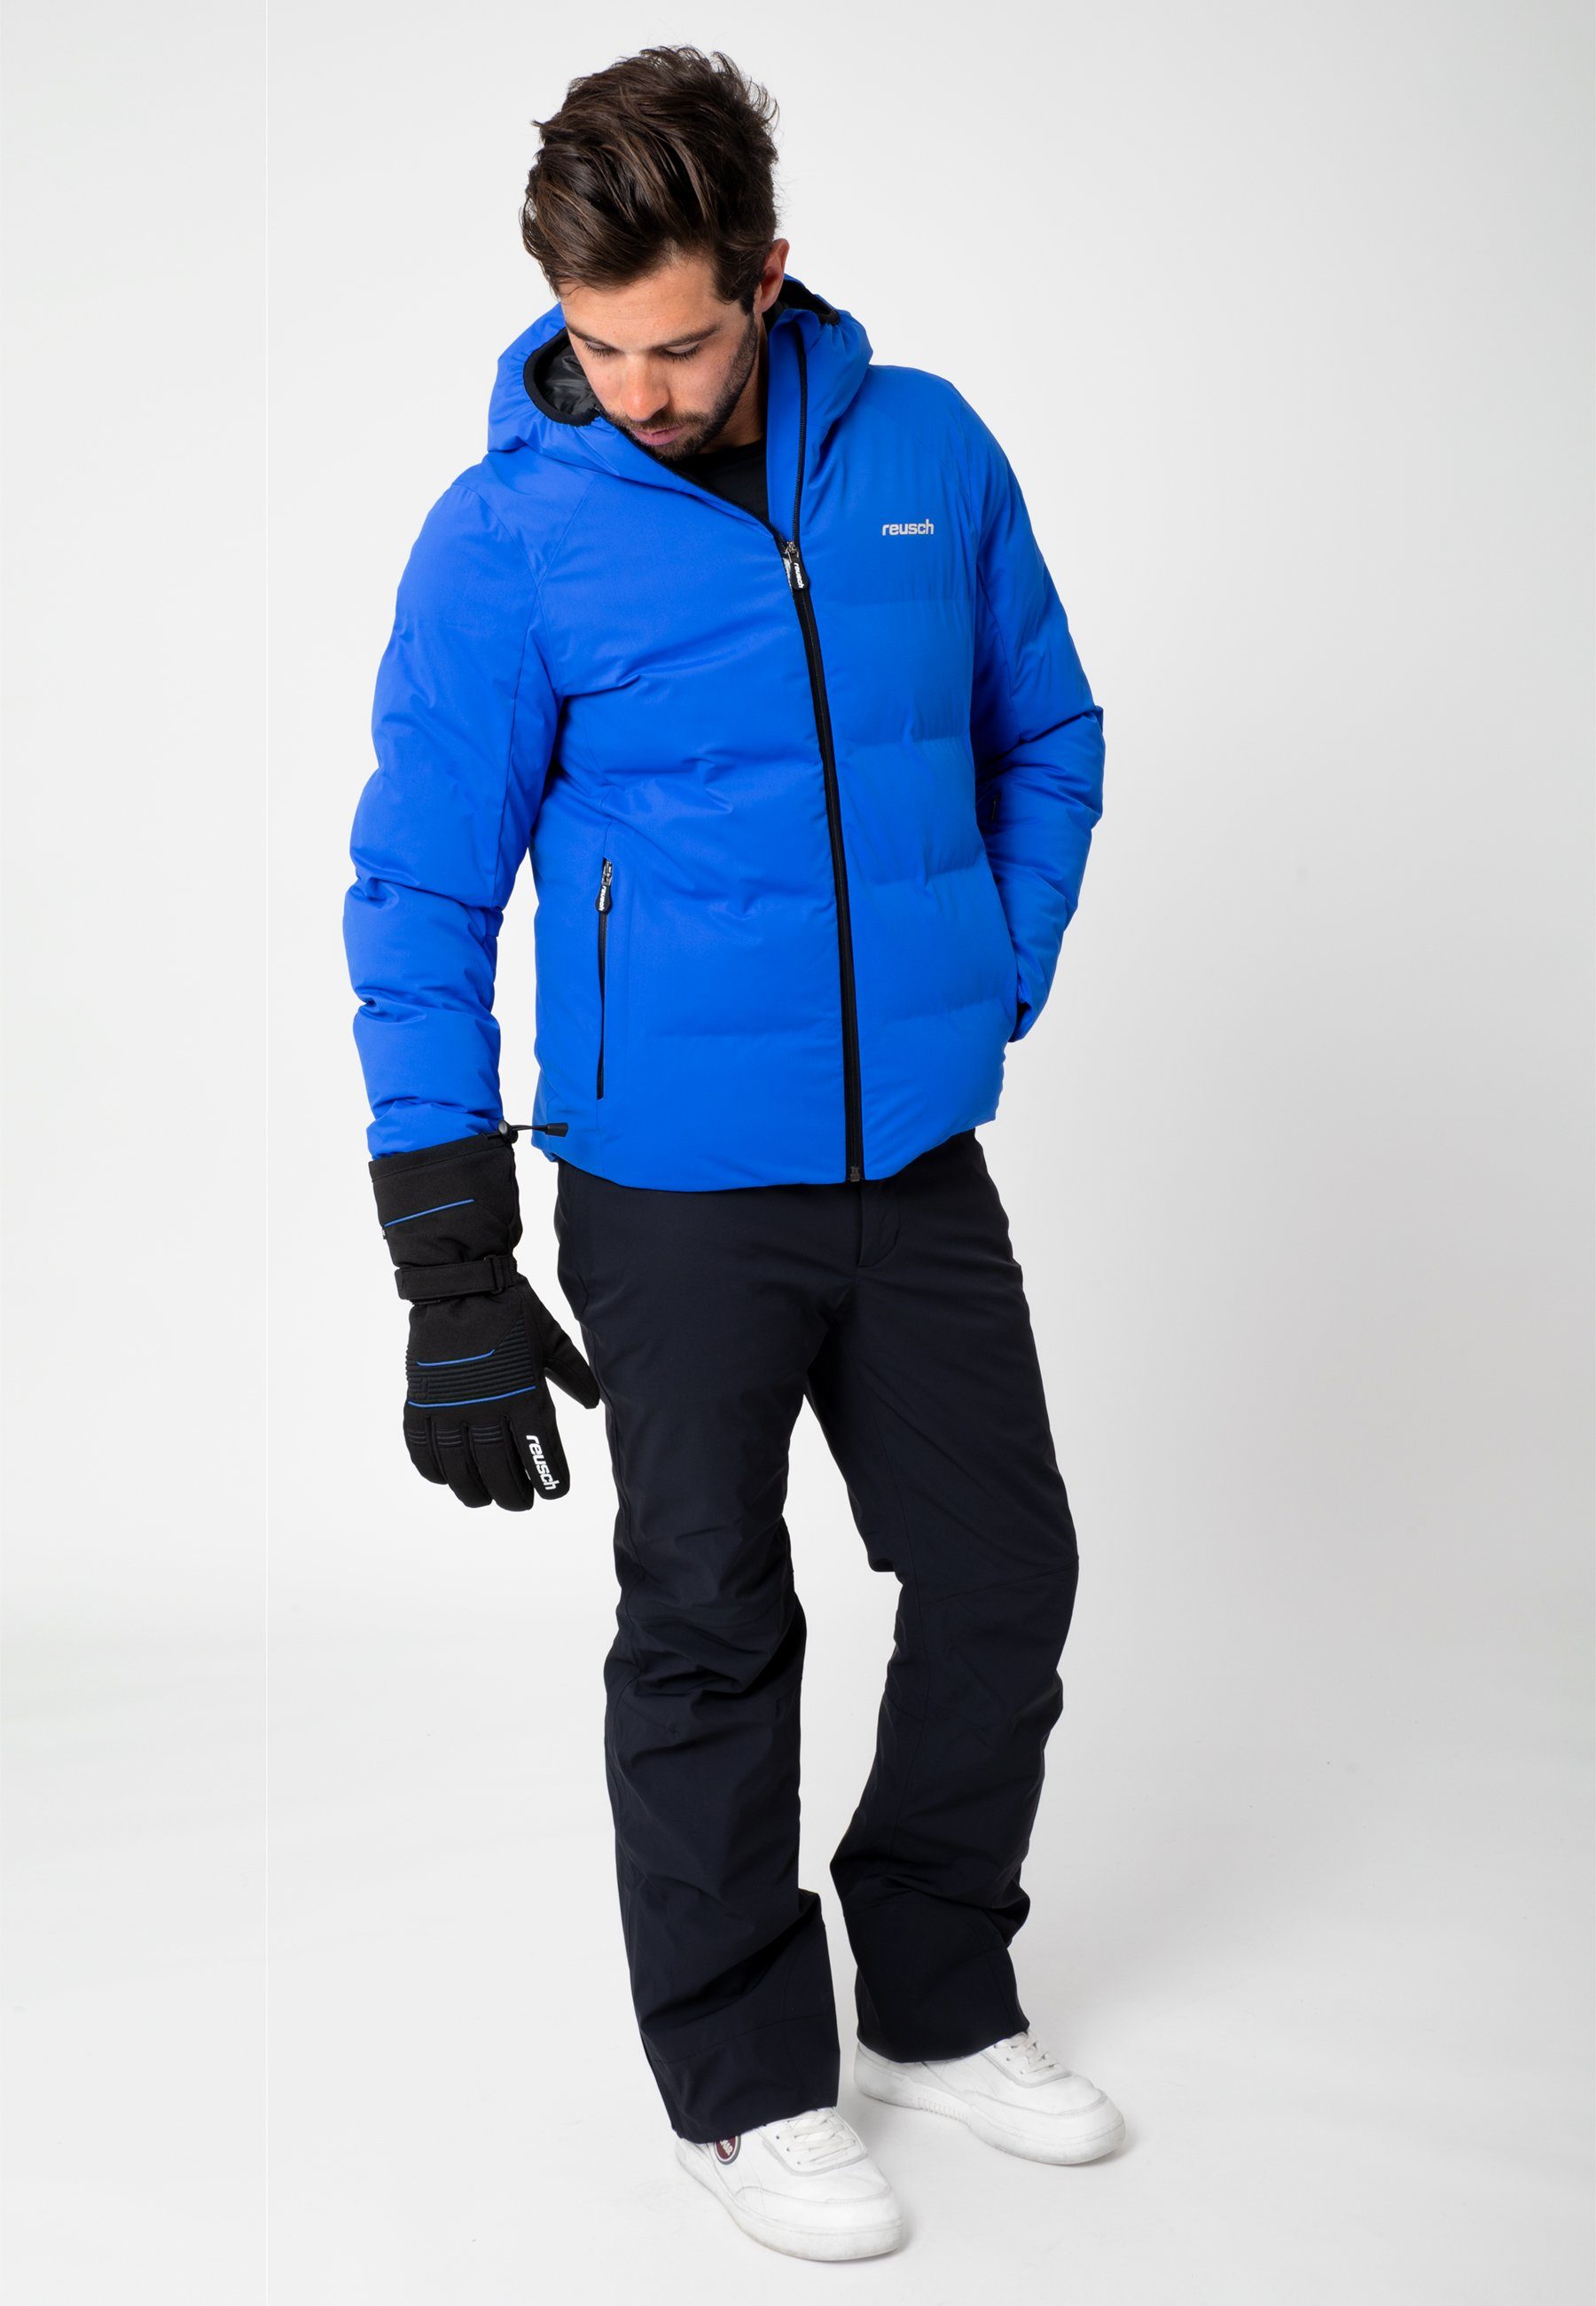 Reusch Skihandschuhe Crosby R-TEX® XT sportlichem Design in blau-schwarz